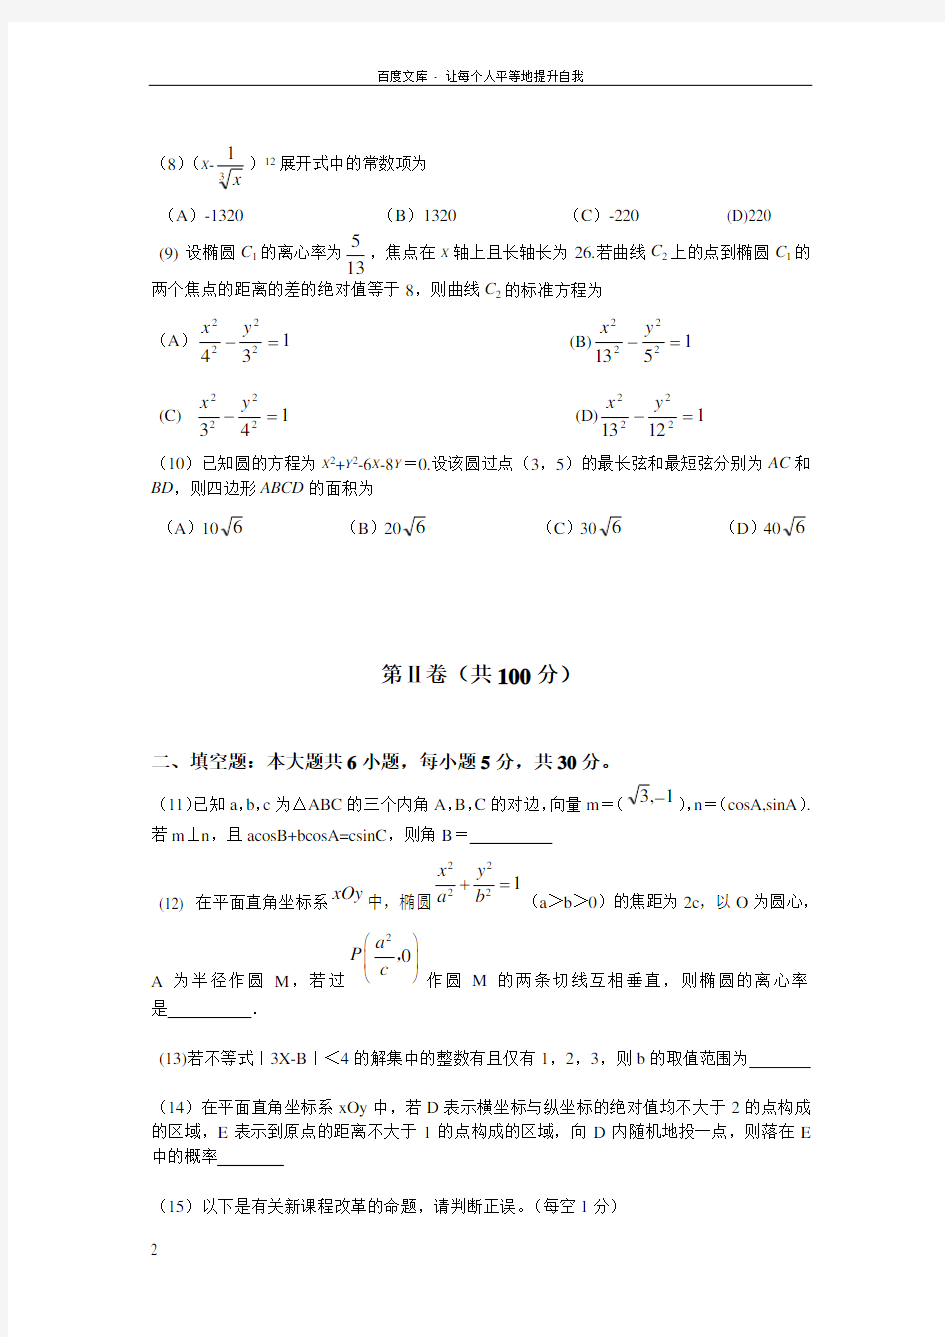 浙江师范大学第五届初等数学竞赛